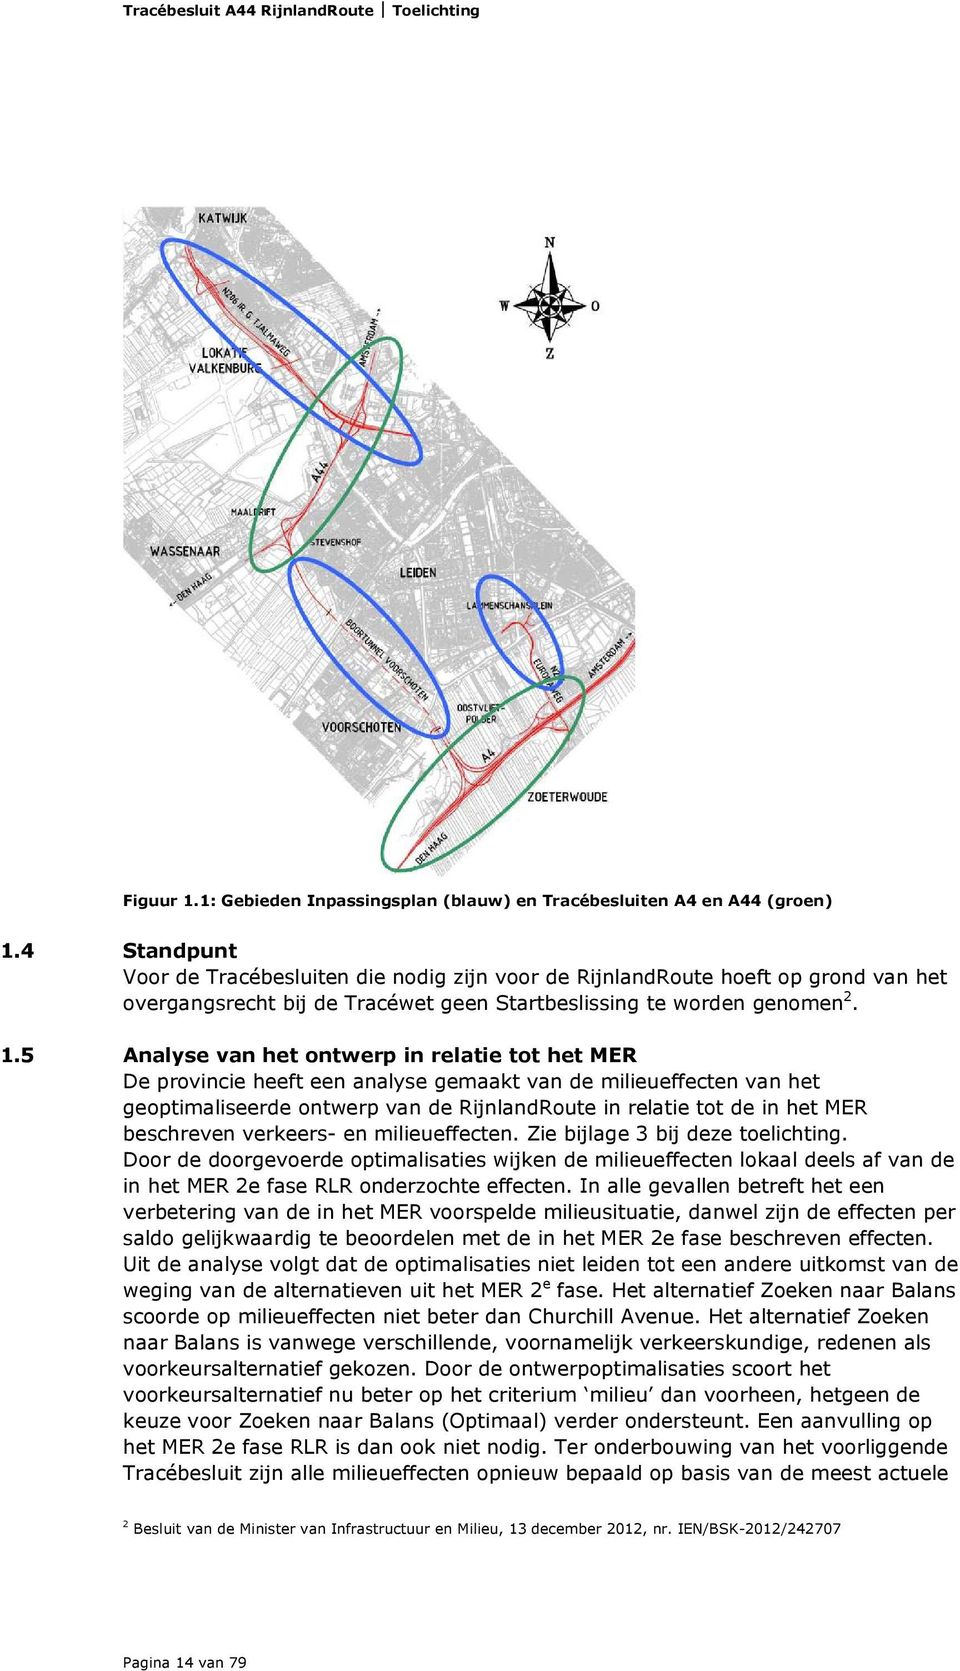 5 Analyse van het ontwerp in relatie tot het MER De provincie heeft een analyse gemaakt van de milieueffecten van het geoptimaliseerde ontwerp van de RijnlandRoute in relatie tot de in het MER